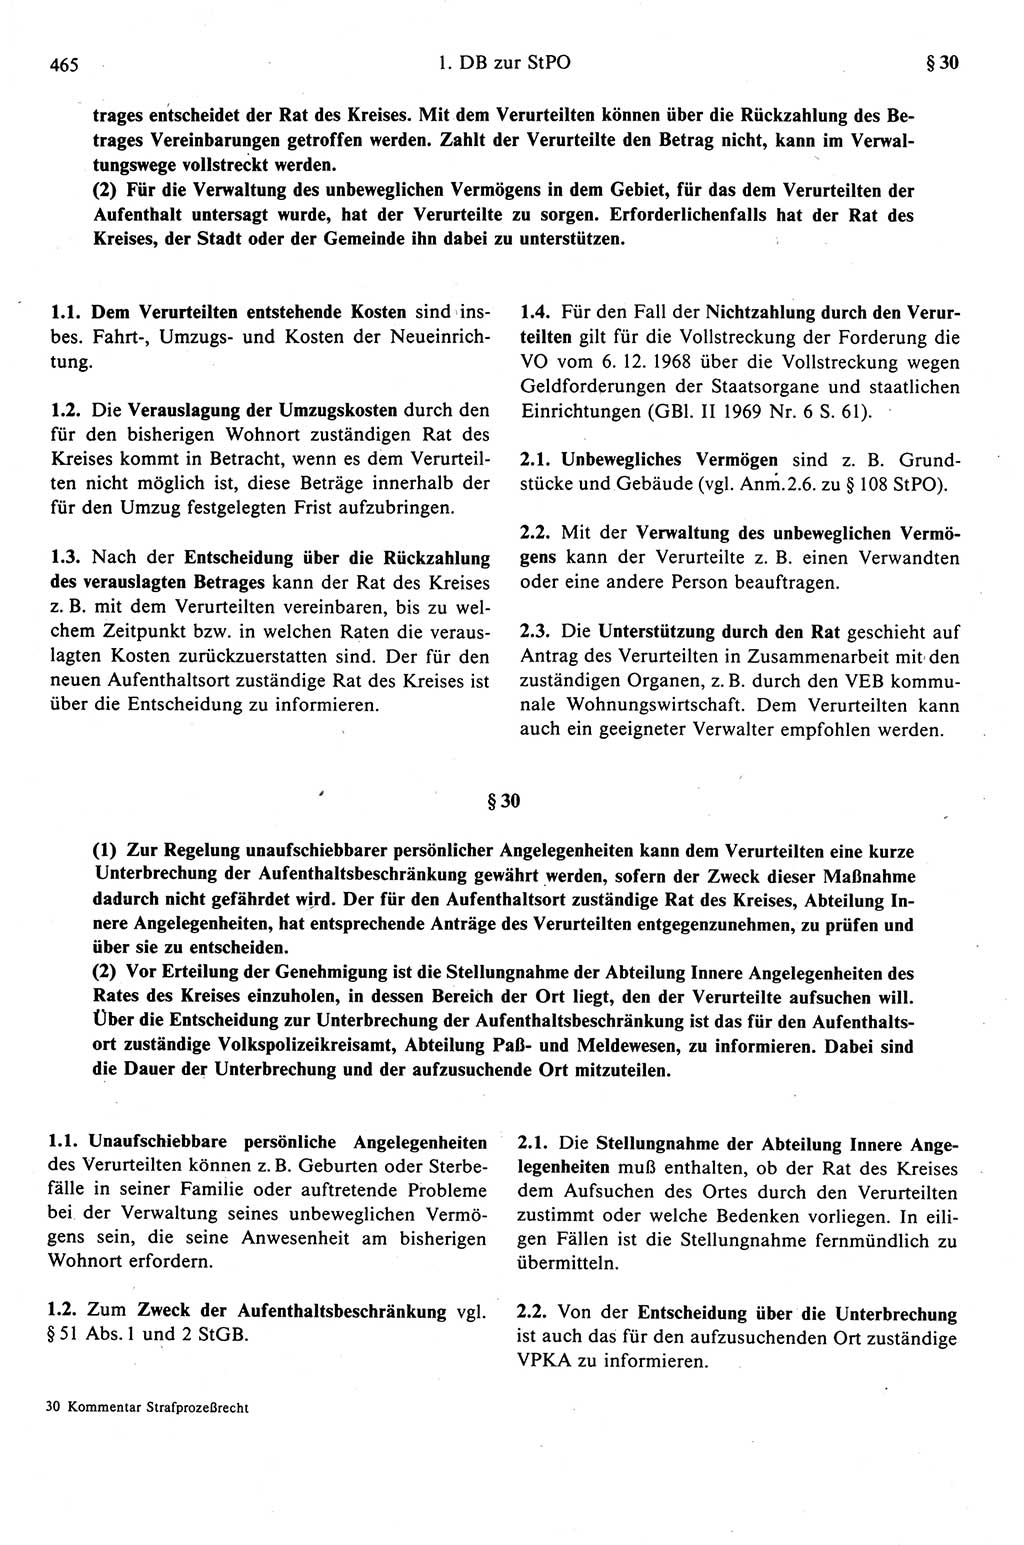 Strafprozeßrecht der DDR (Deutsche Demokratische Republik), Kommentar zur Strafprozeßordnung (StPO) 1989, Seite 465 (Strafprozeßr. DDR Komm. StPO 1989, S. 465)